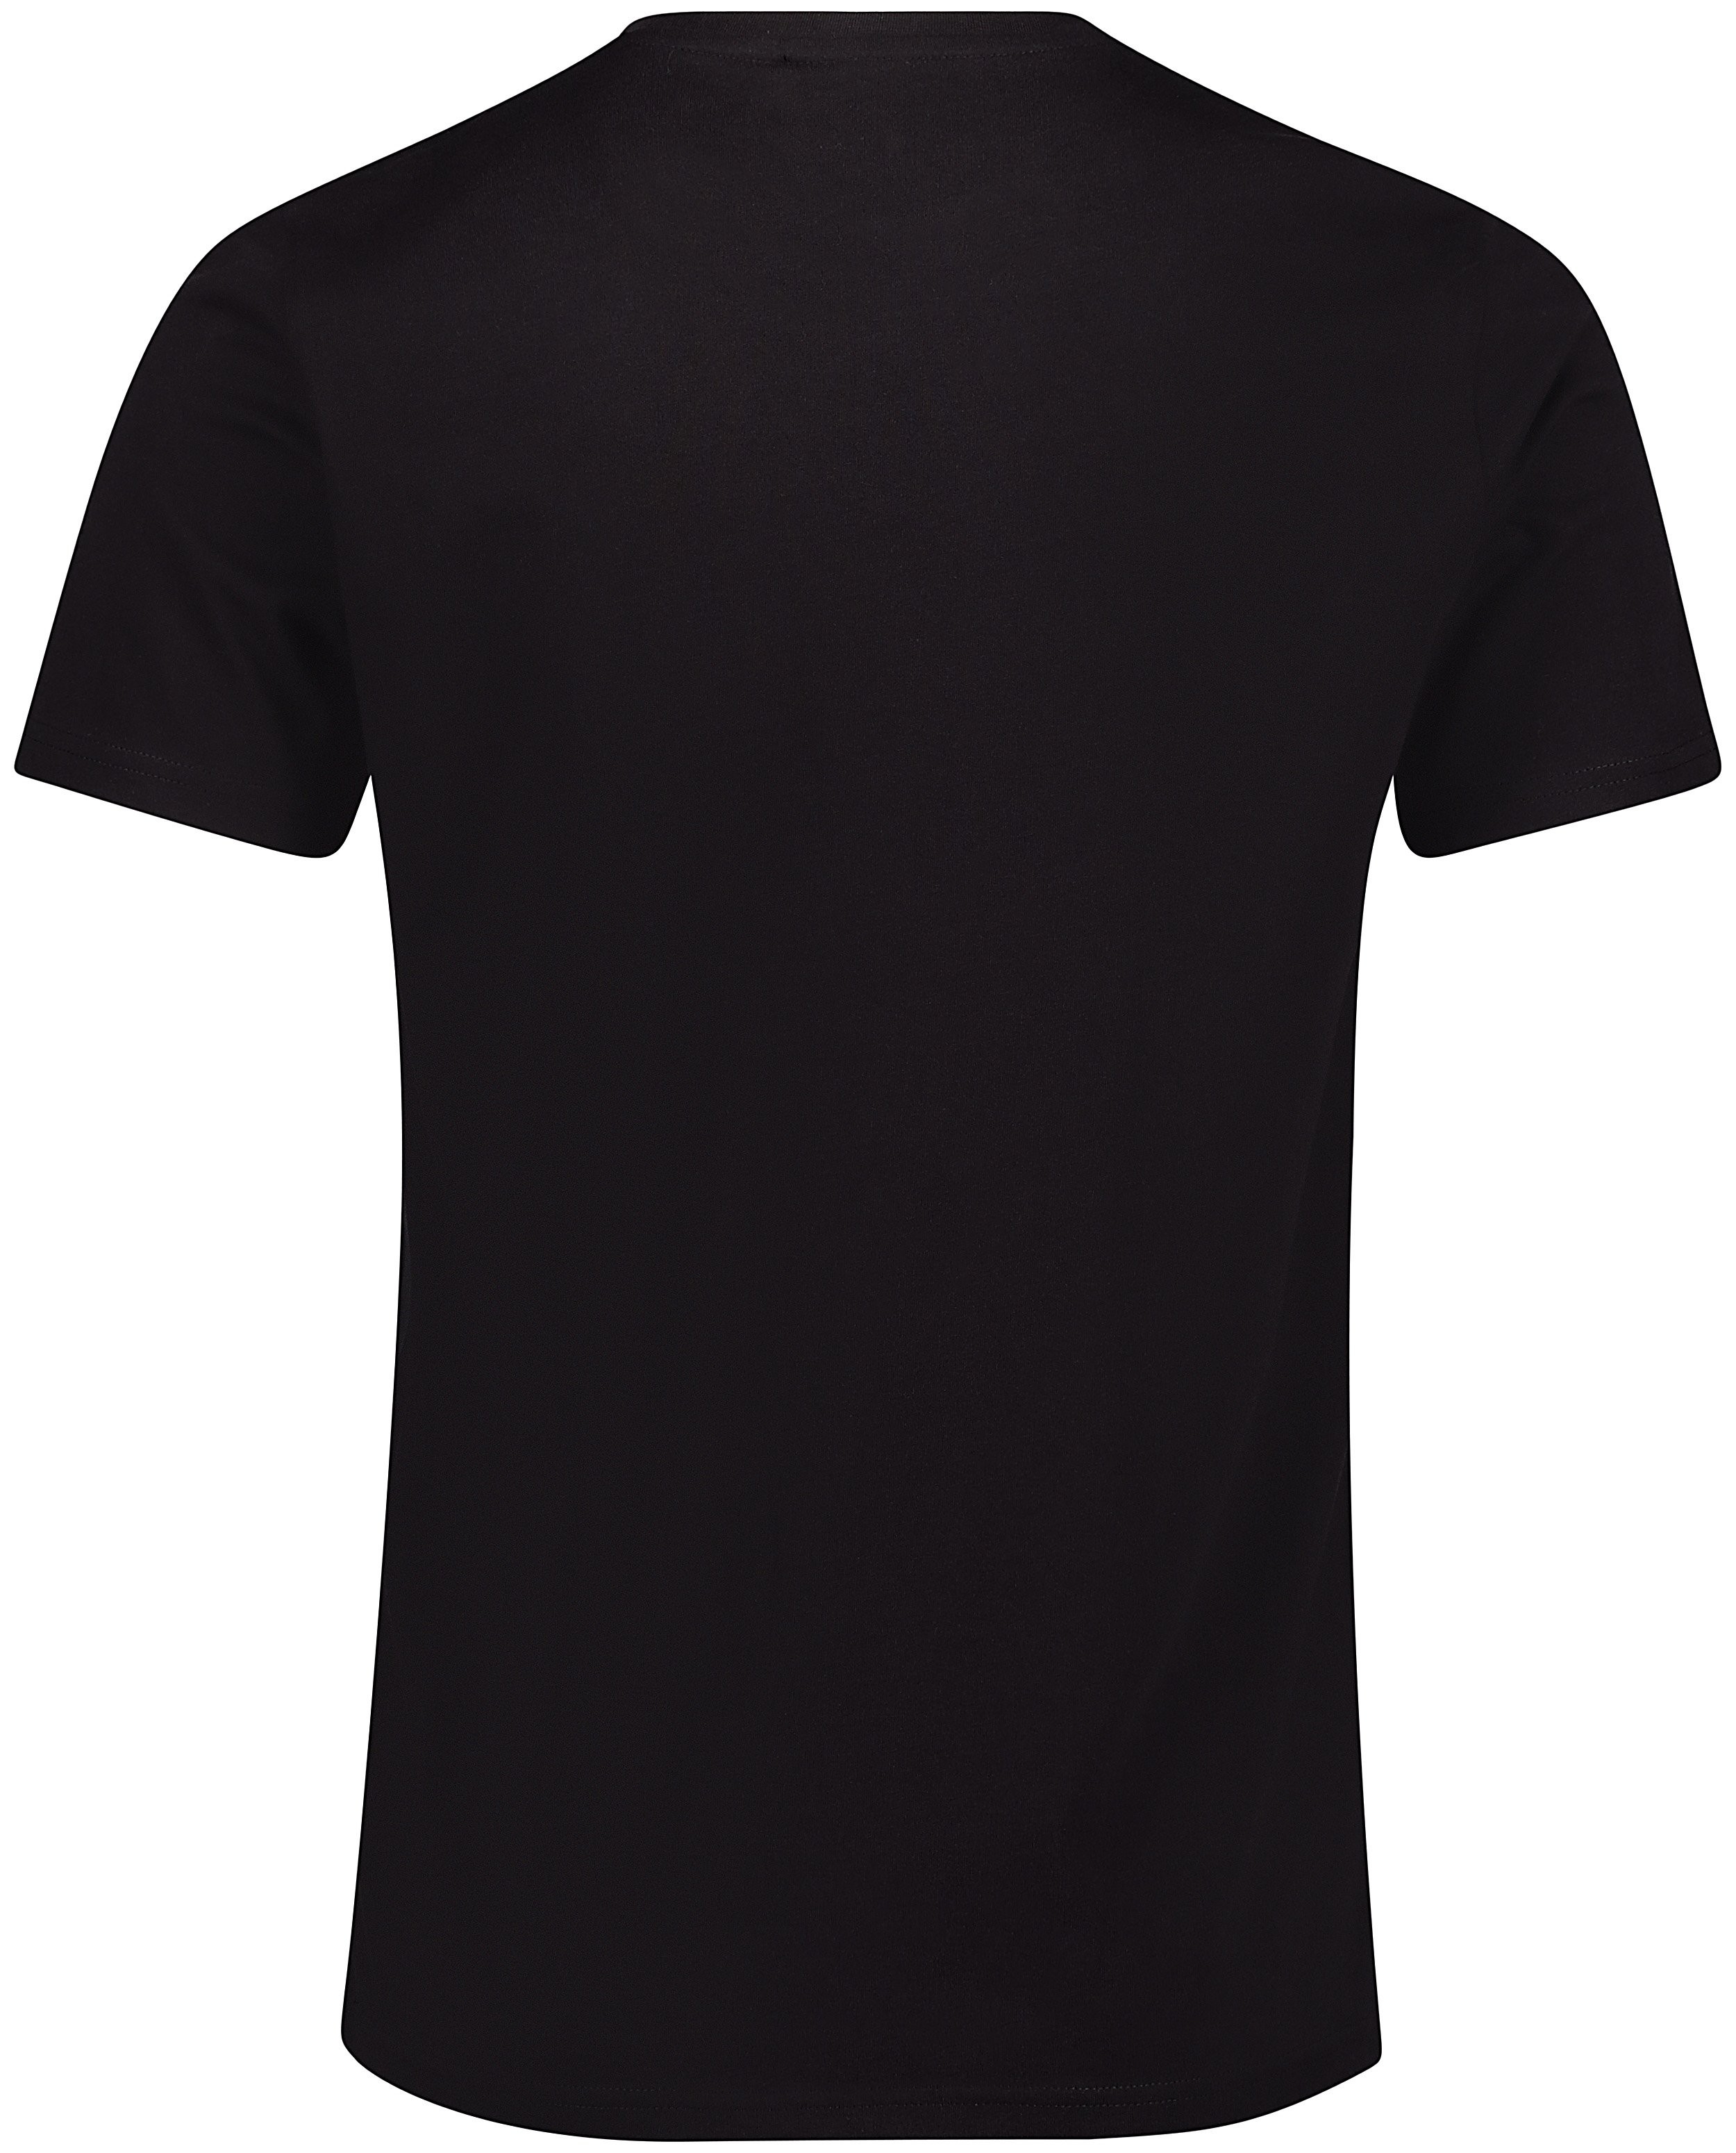 T-shirts - T-shirt noir